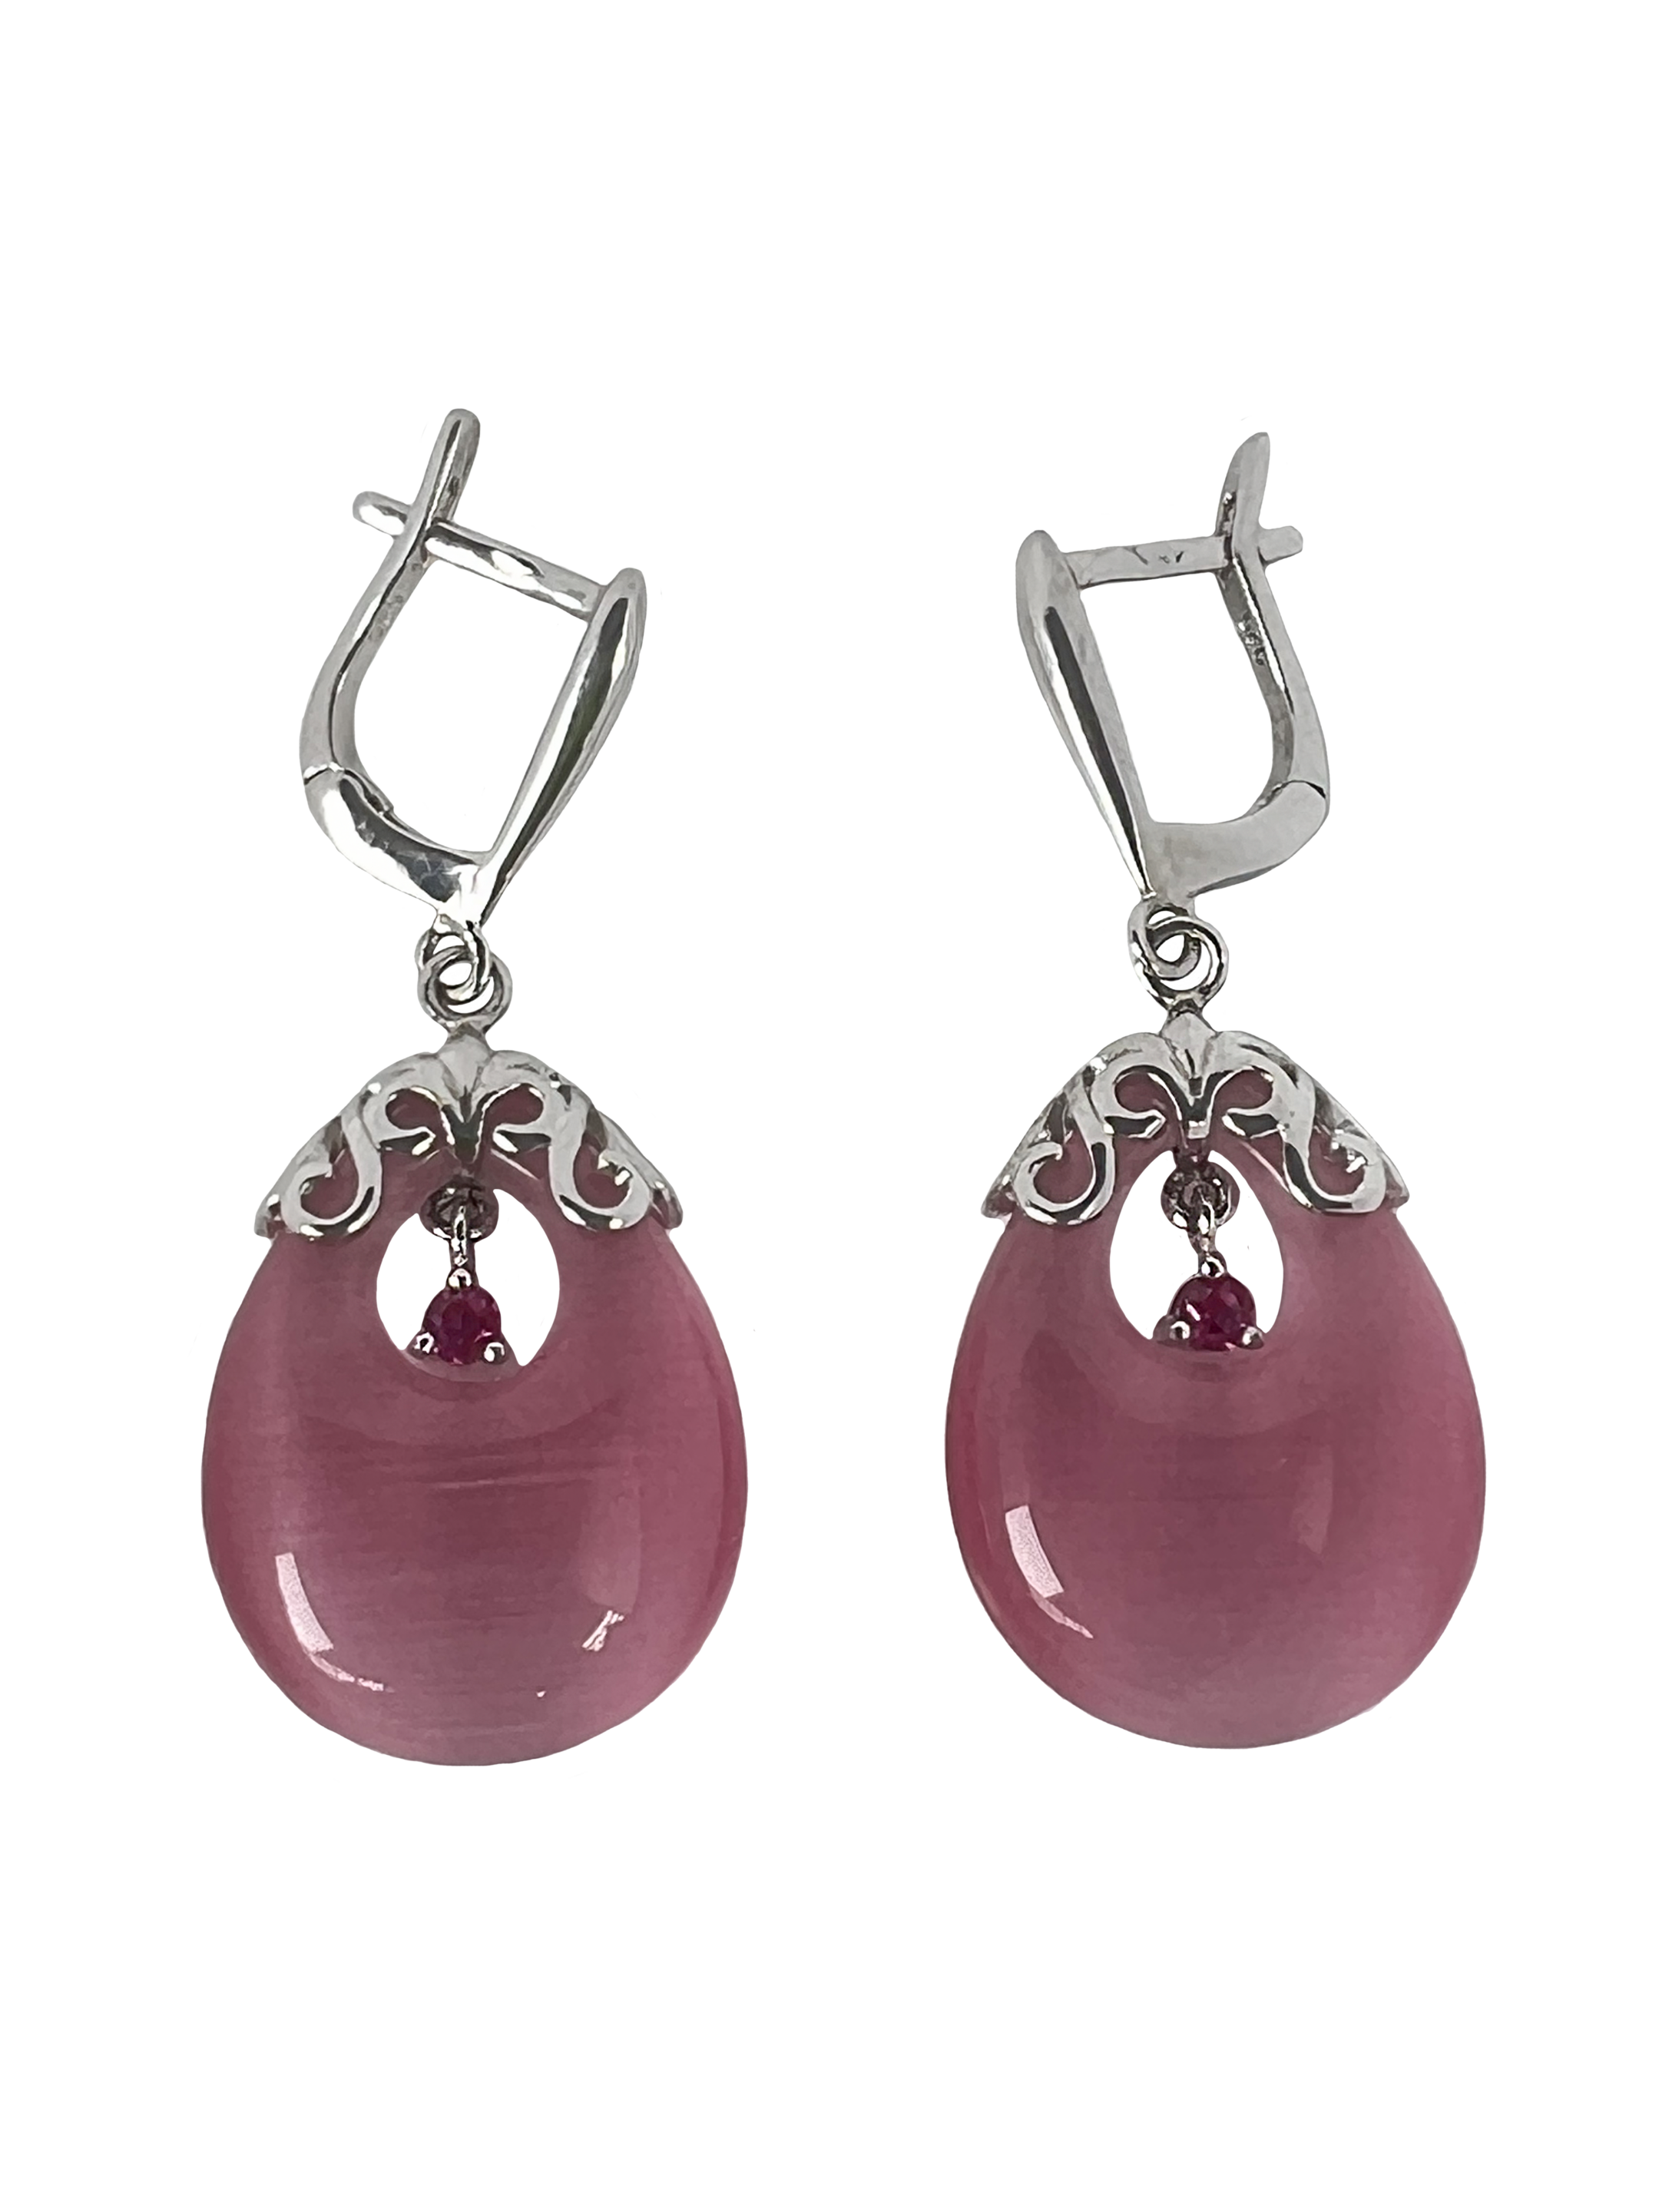 Boucles d'oreilles pendantes en argent avec motifs et éléments roses